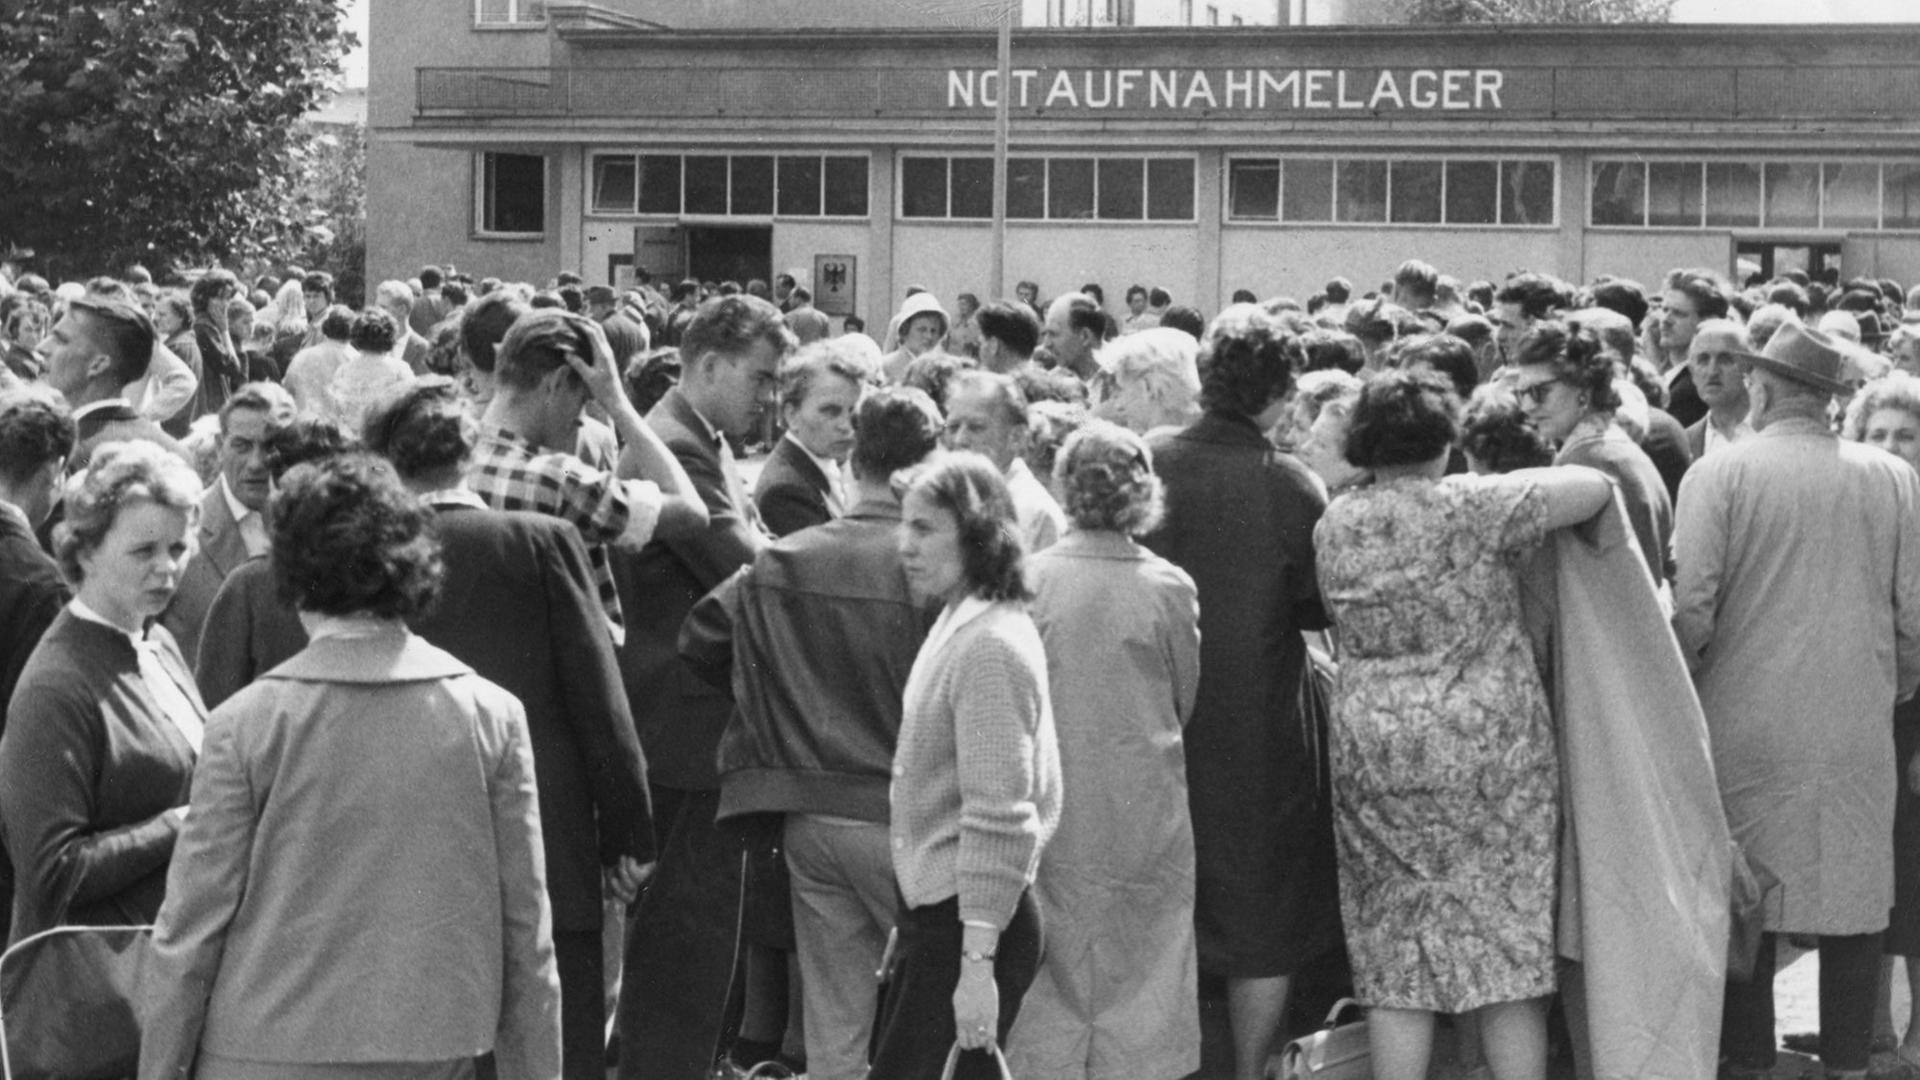 Am 14. August 1961, dem Tag nach dem Beginn des Mauerbaus, war der Flüchtlingsansturm auf das Notaufnahmelager Berlin-Marienfelde besonders groß.